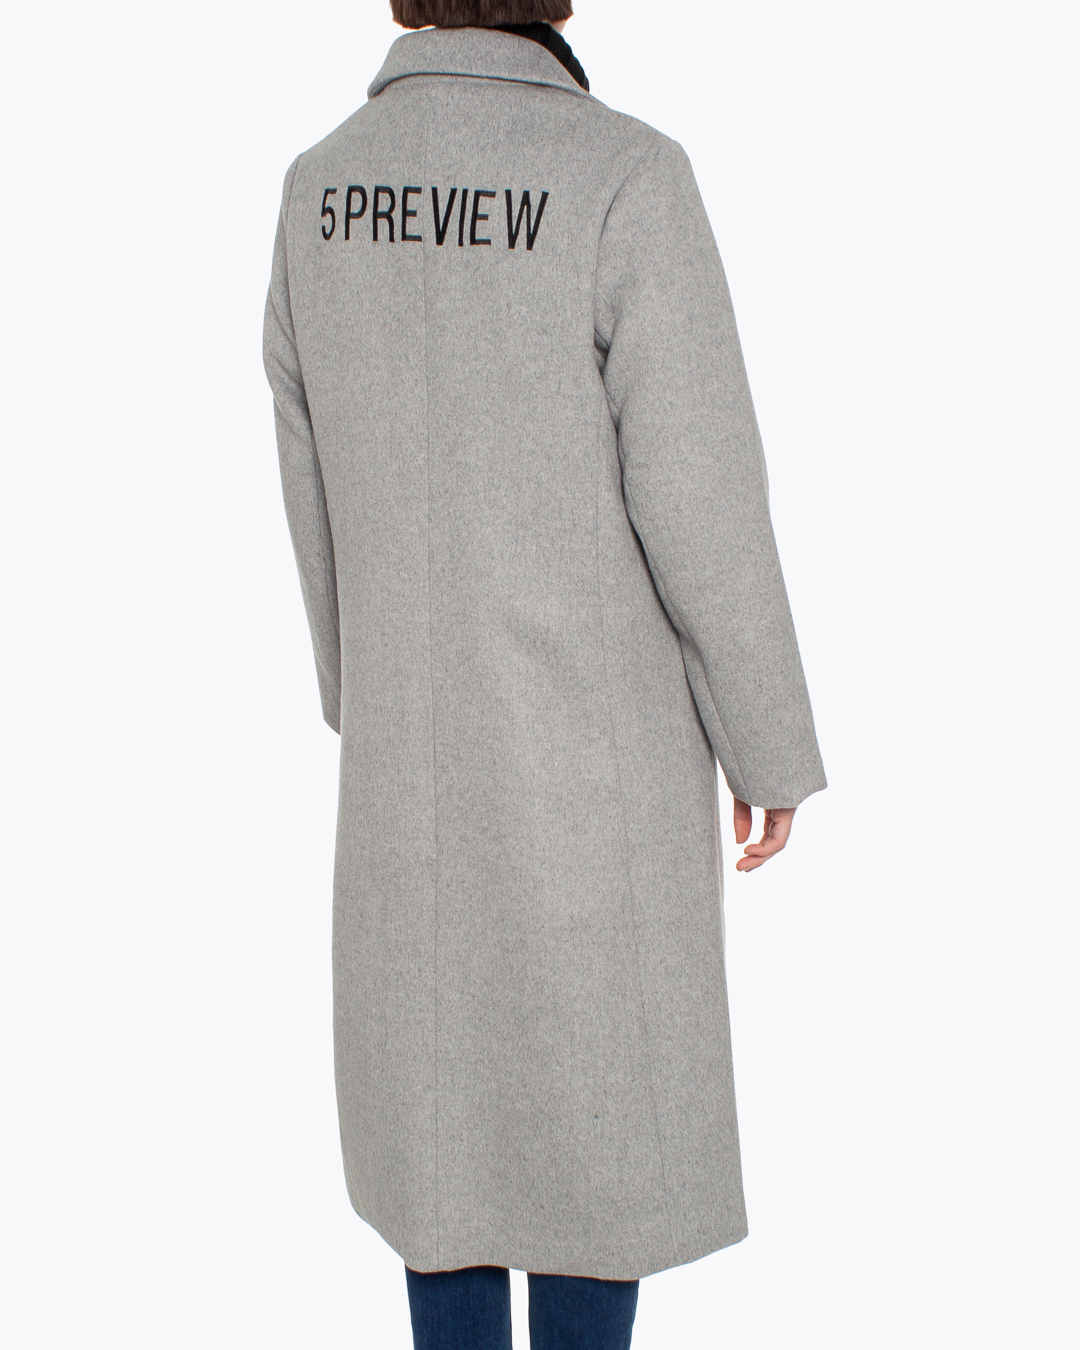 Женская пальто 5Preview, сезон: зима 2021/22. Купить за 39600 руб. | Фото 4